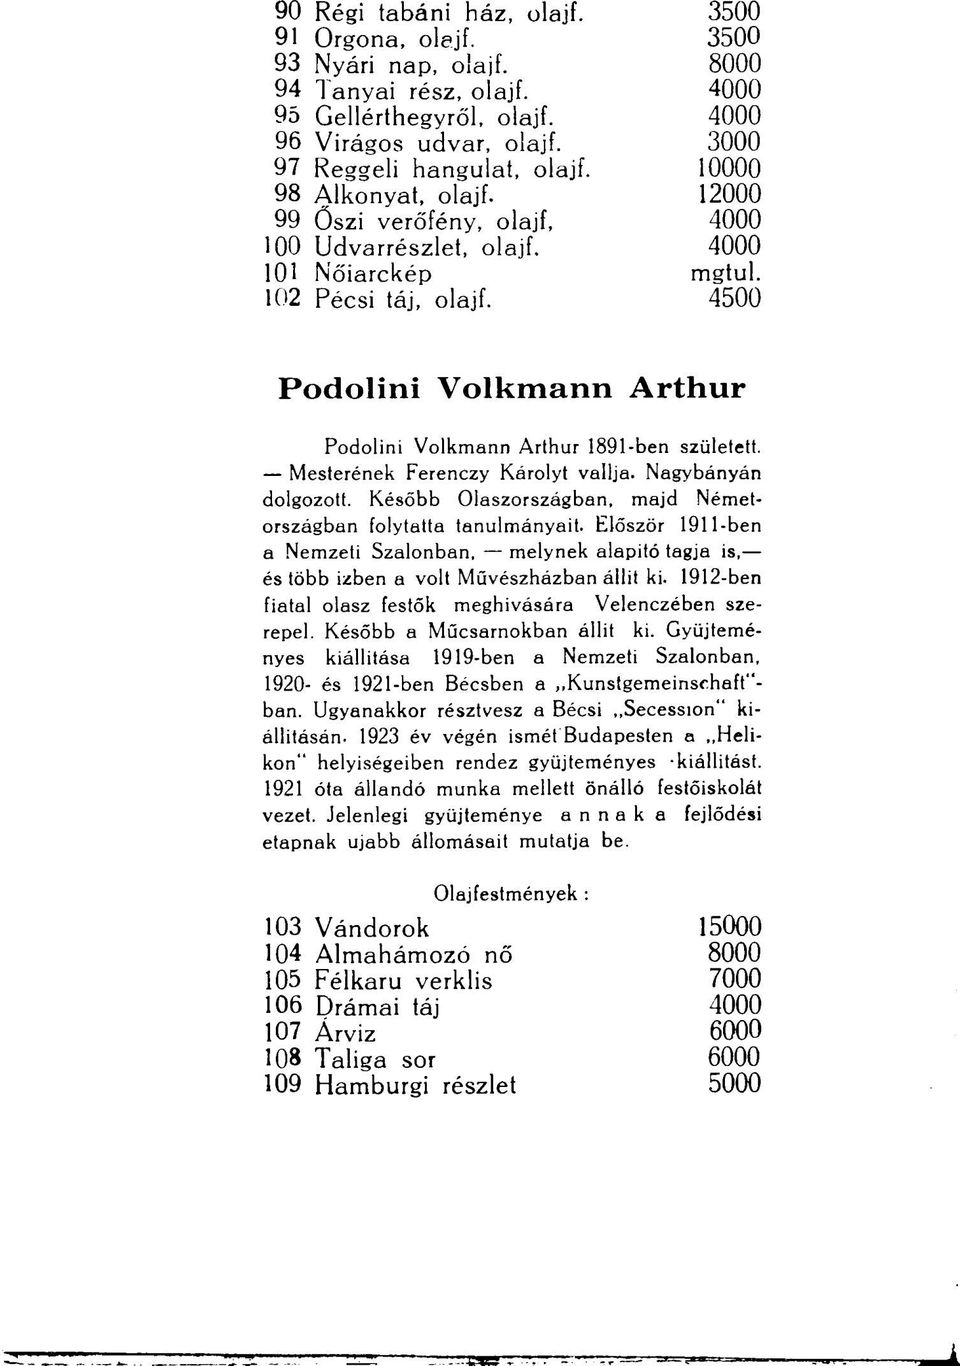 4500 Podolini Volkmann Arthur Podolini Volkmann Arthur 1891-ben született. Mesterének Ferenczy Károlyt vallja. Nagybányán dolgozott. Később Olaszországban, majd Németországban folytatta tanulmányait.